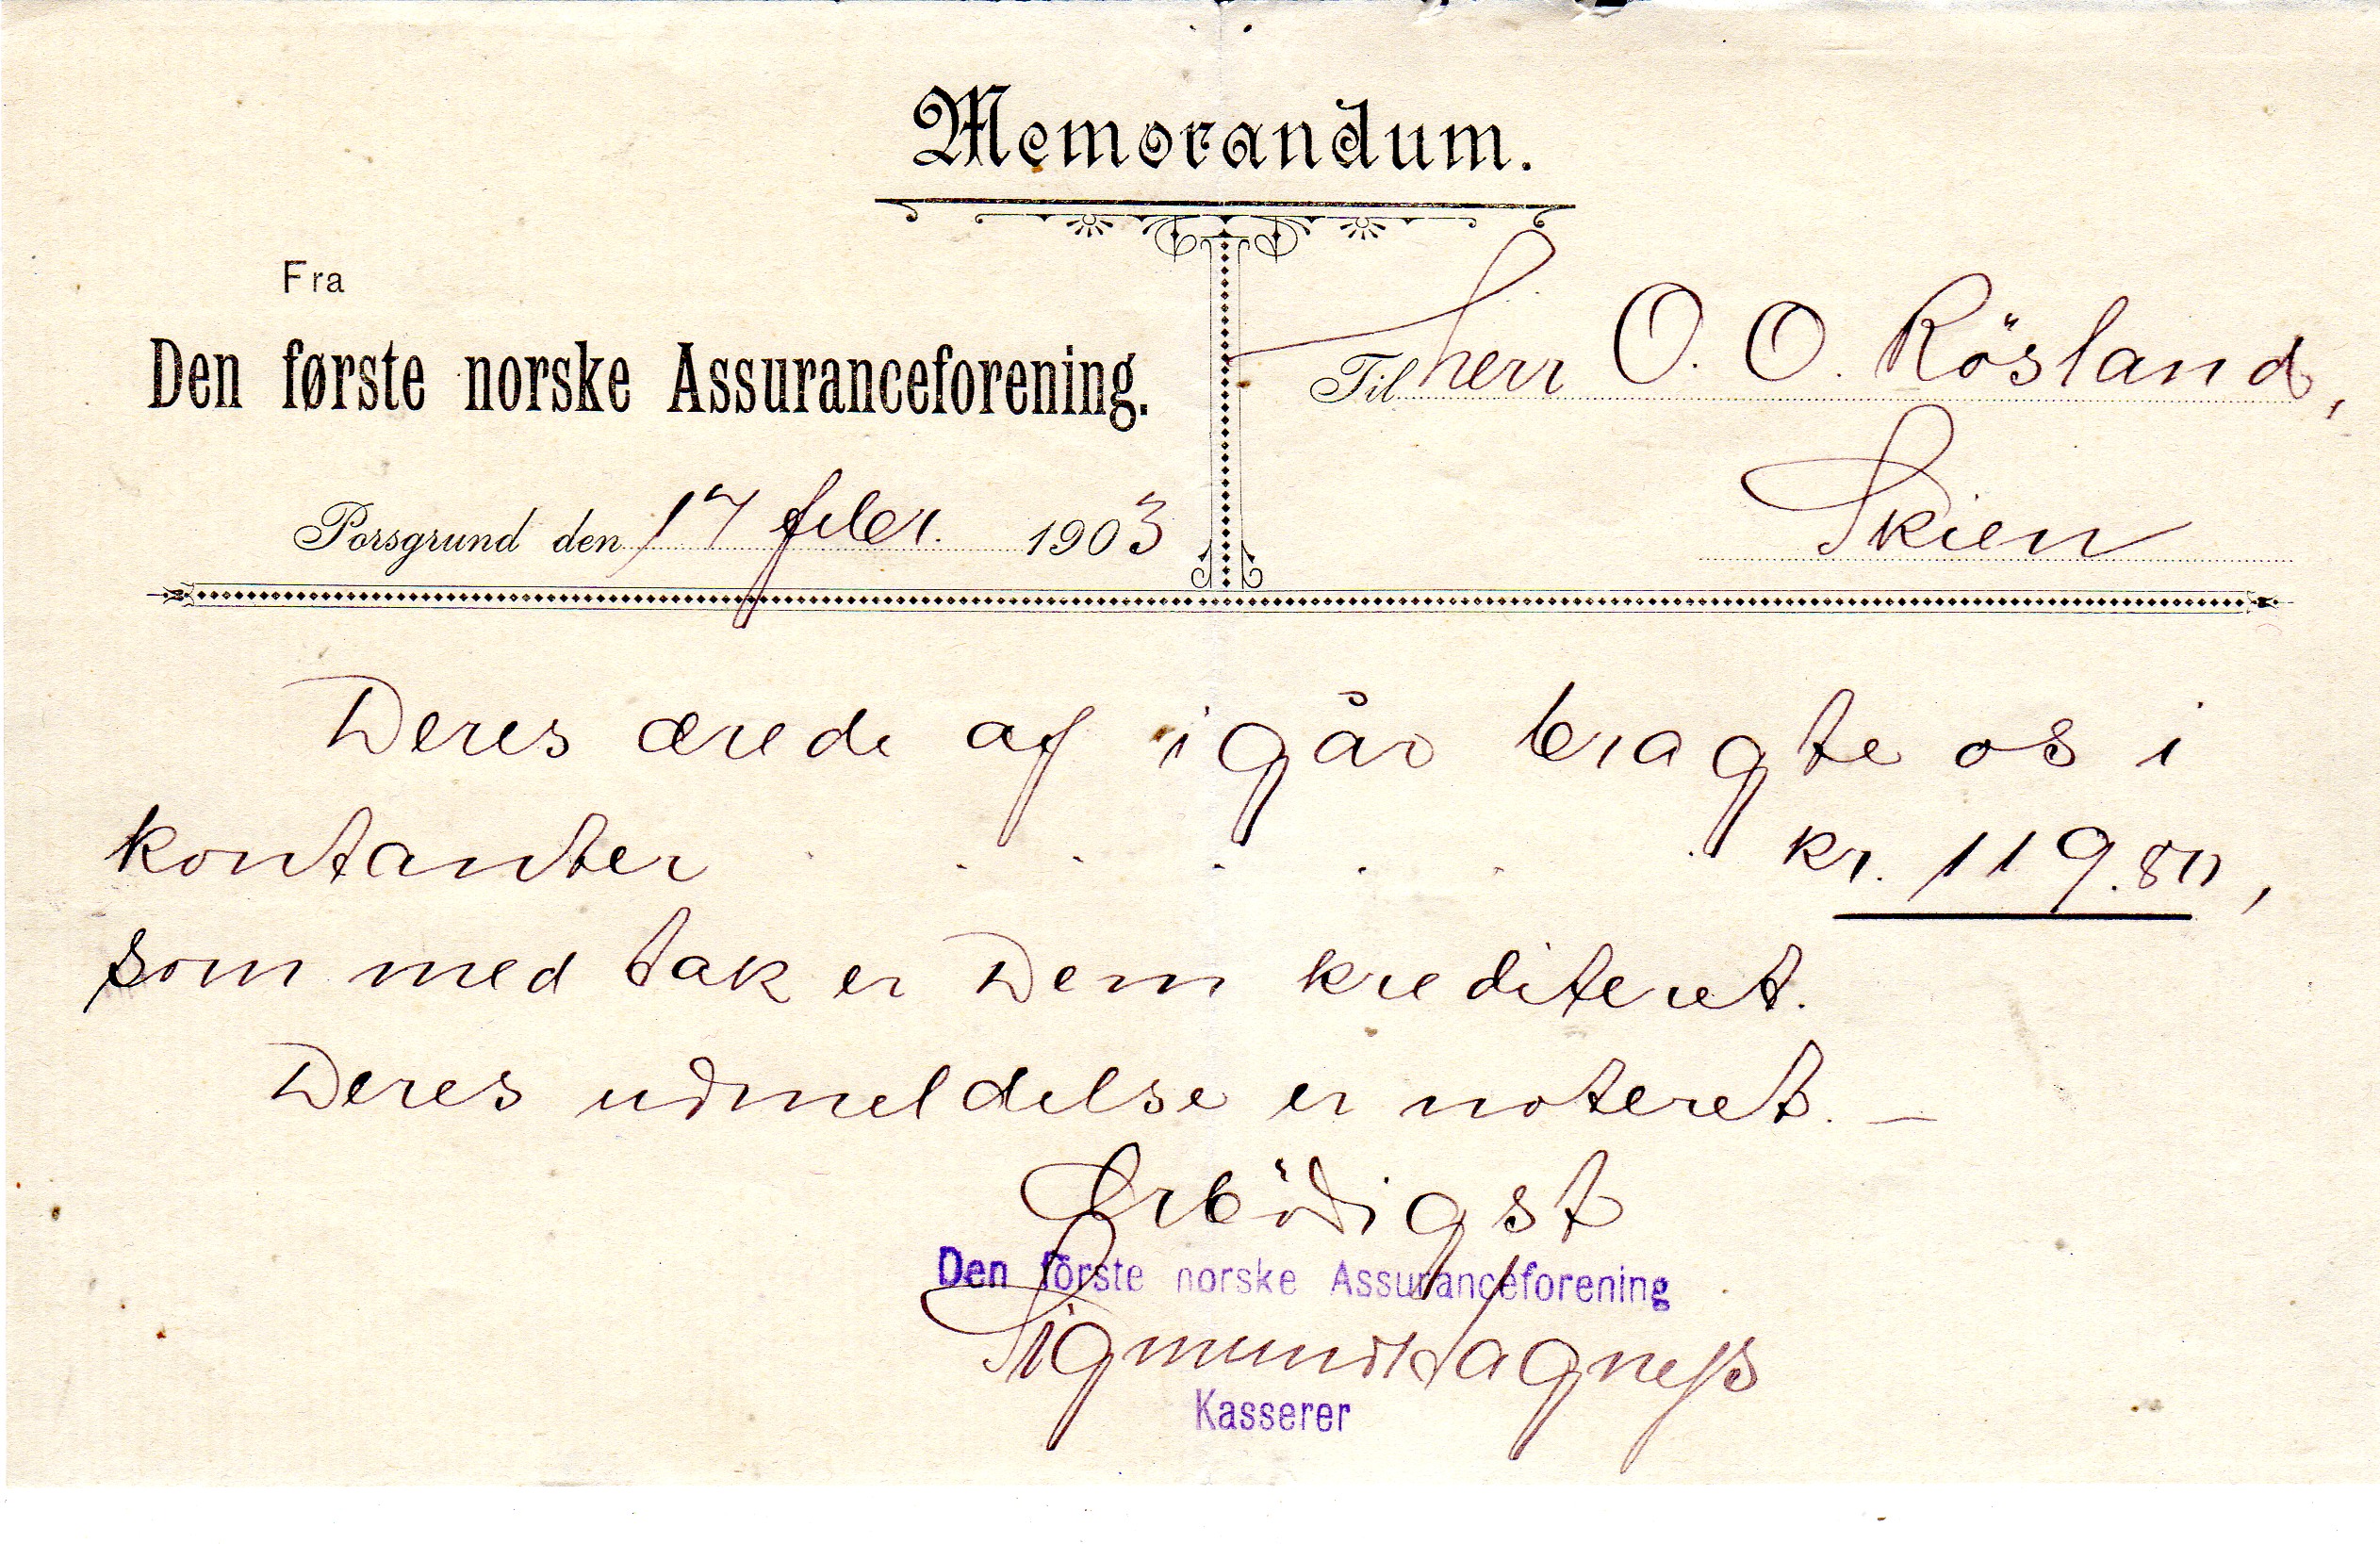 Memorandum Den første norske assuransefprening  Porsgrund 1903